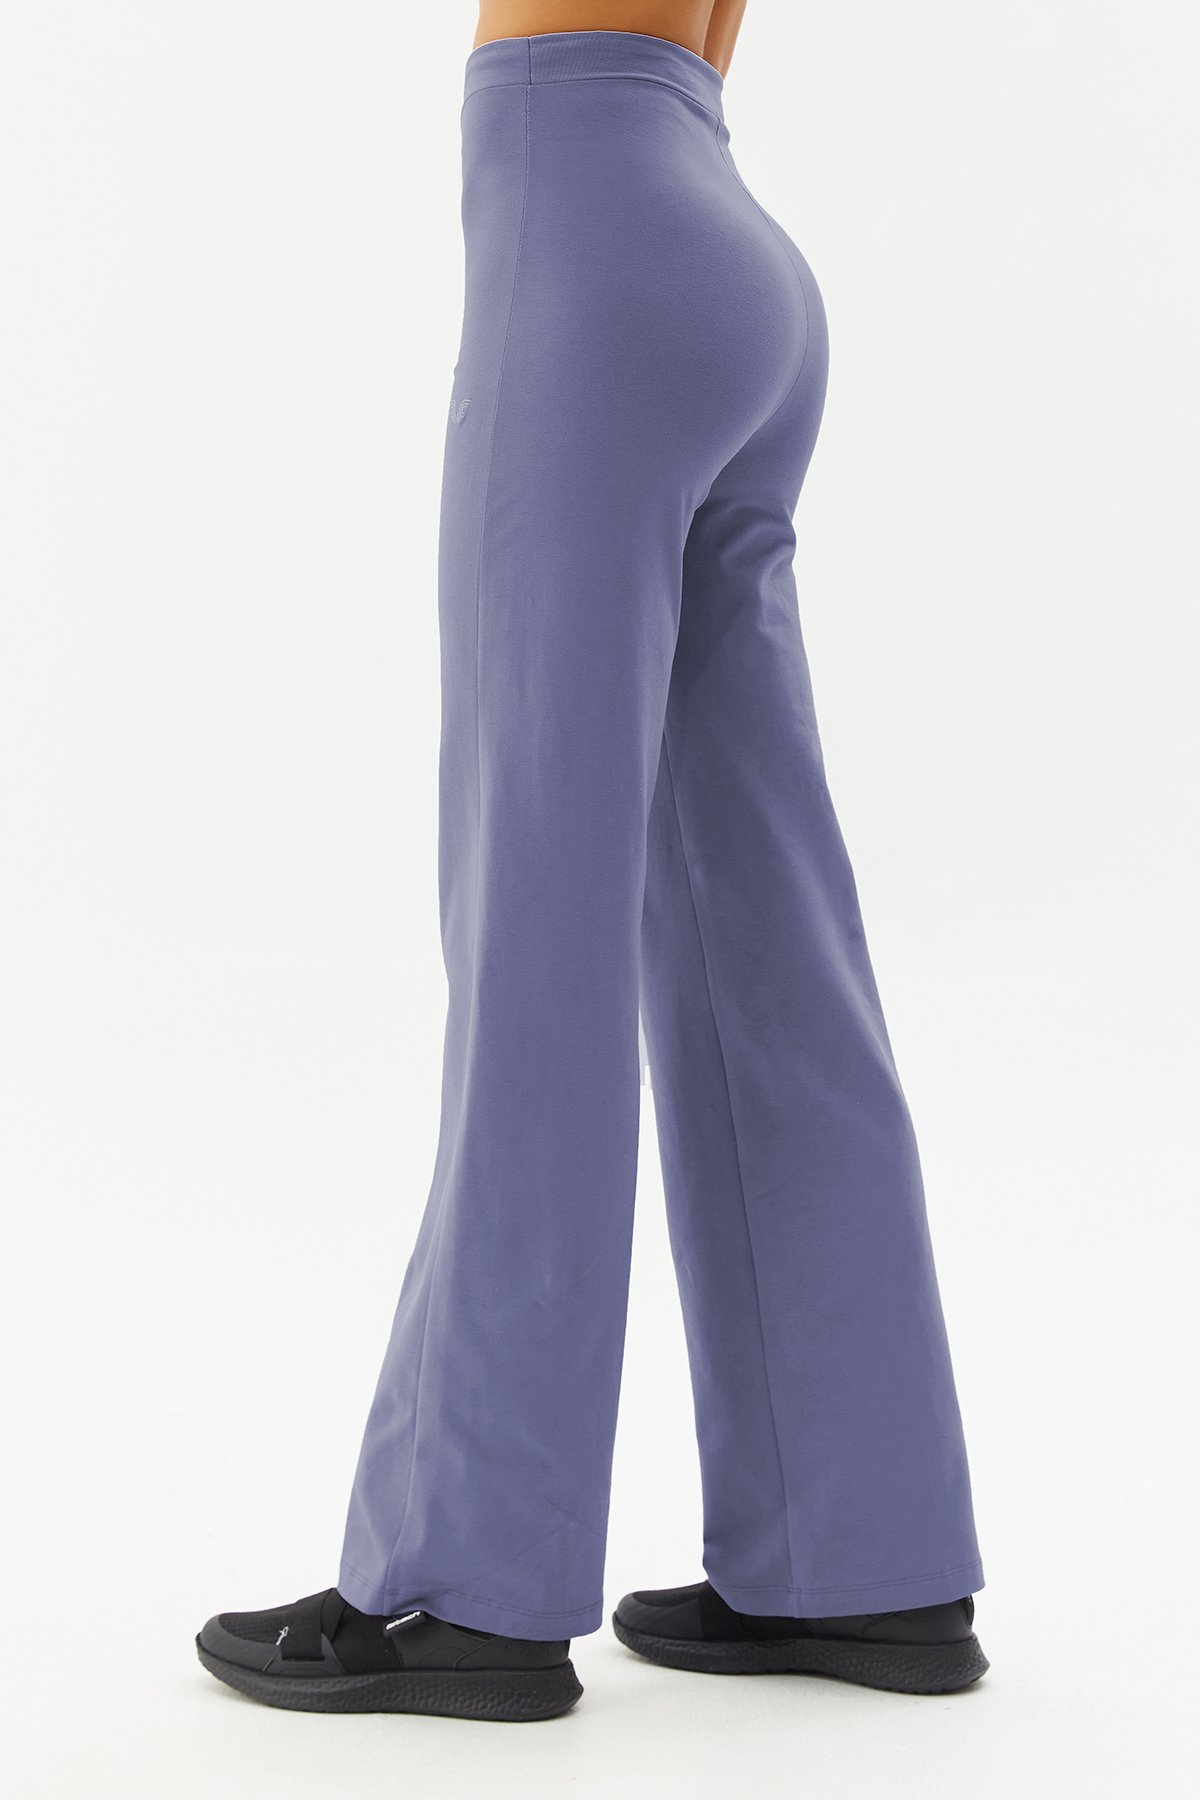 Kadın Lacivert Yüksek Bel Bol Paça Yoga Pantolonu 0311